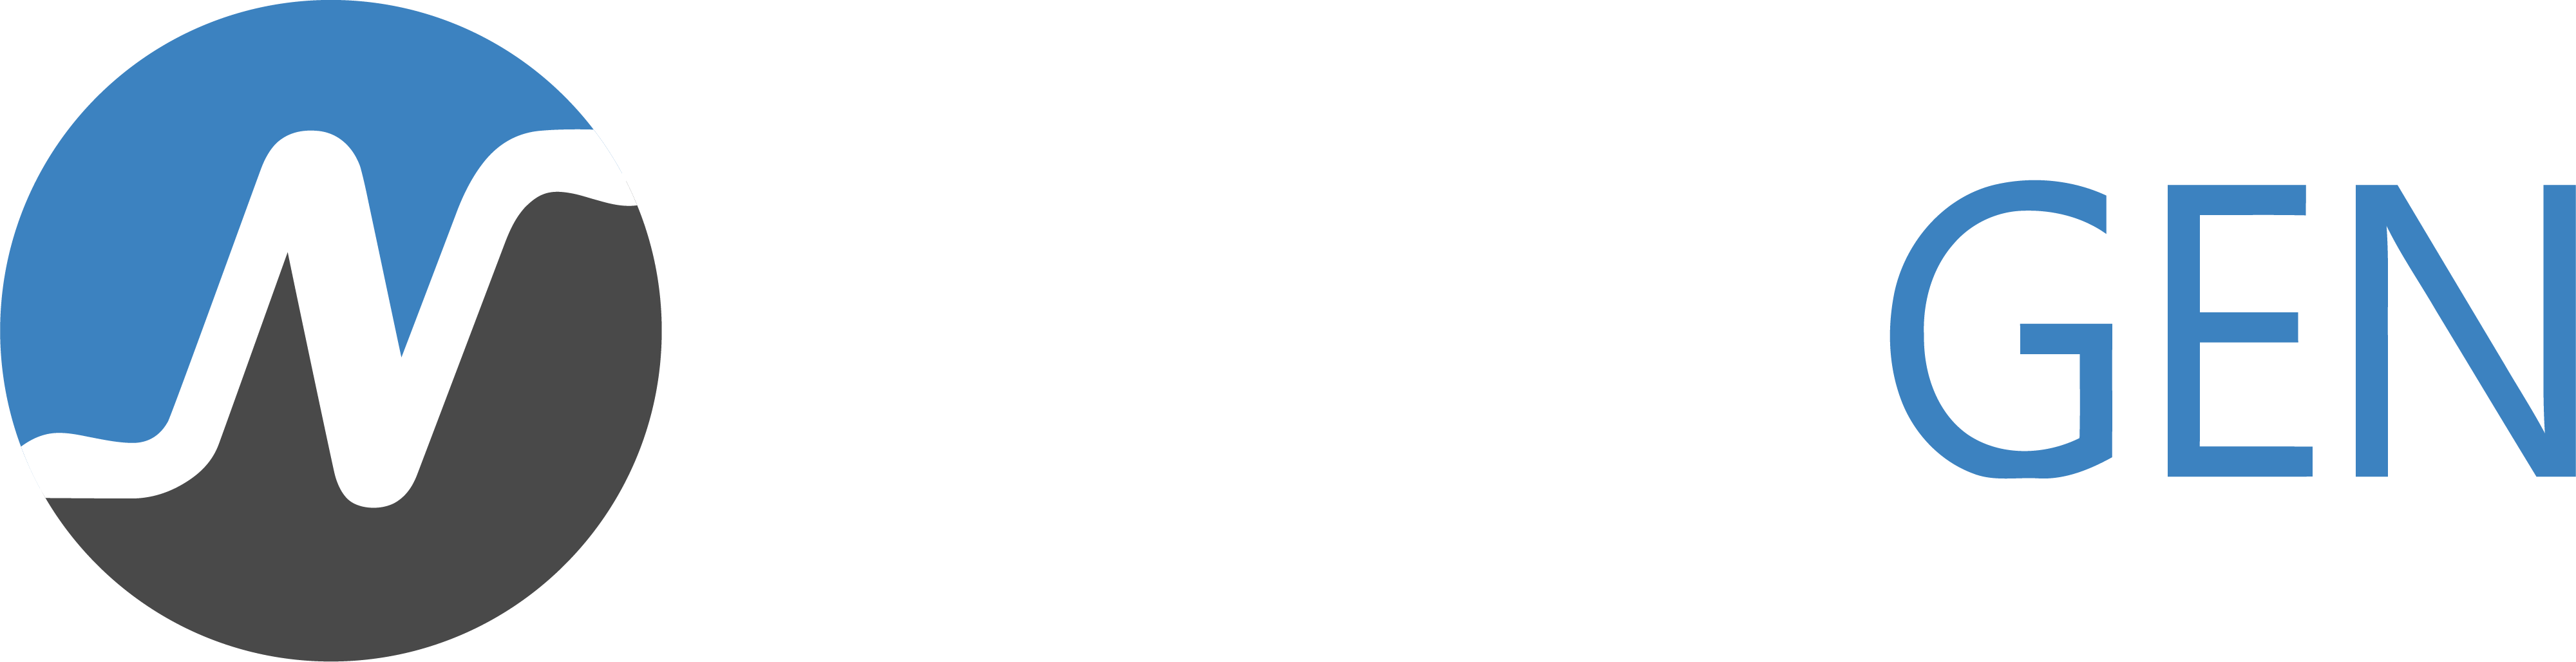 nexxtgen-round+text-white_website-menu